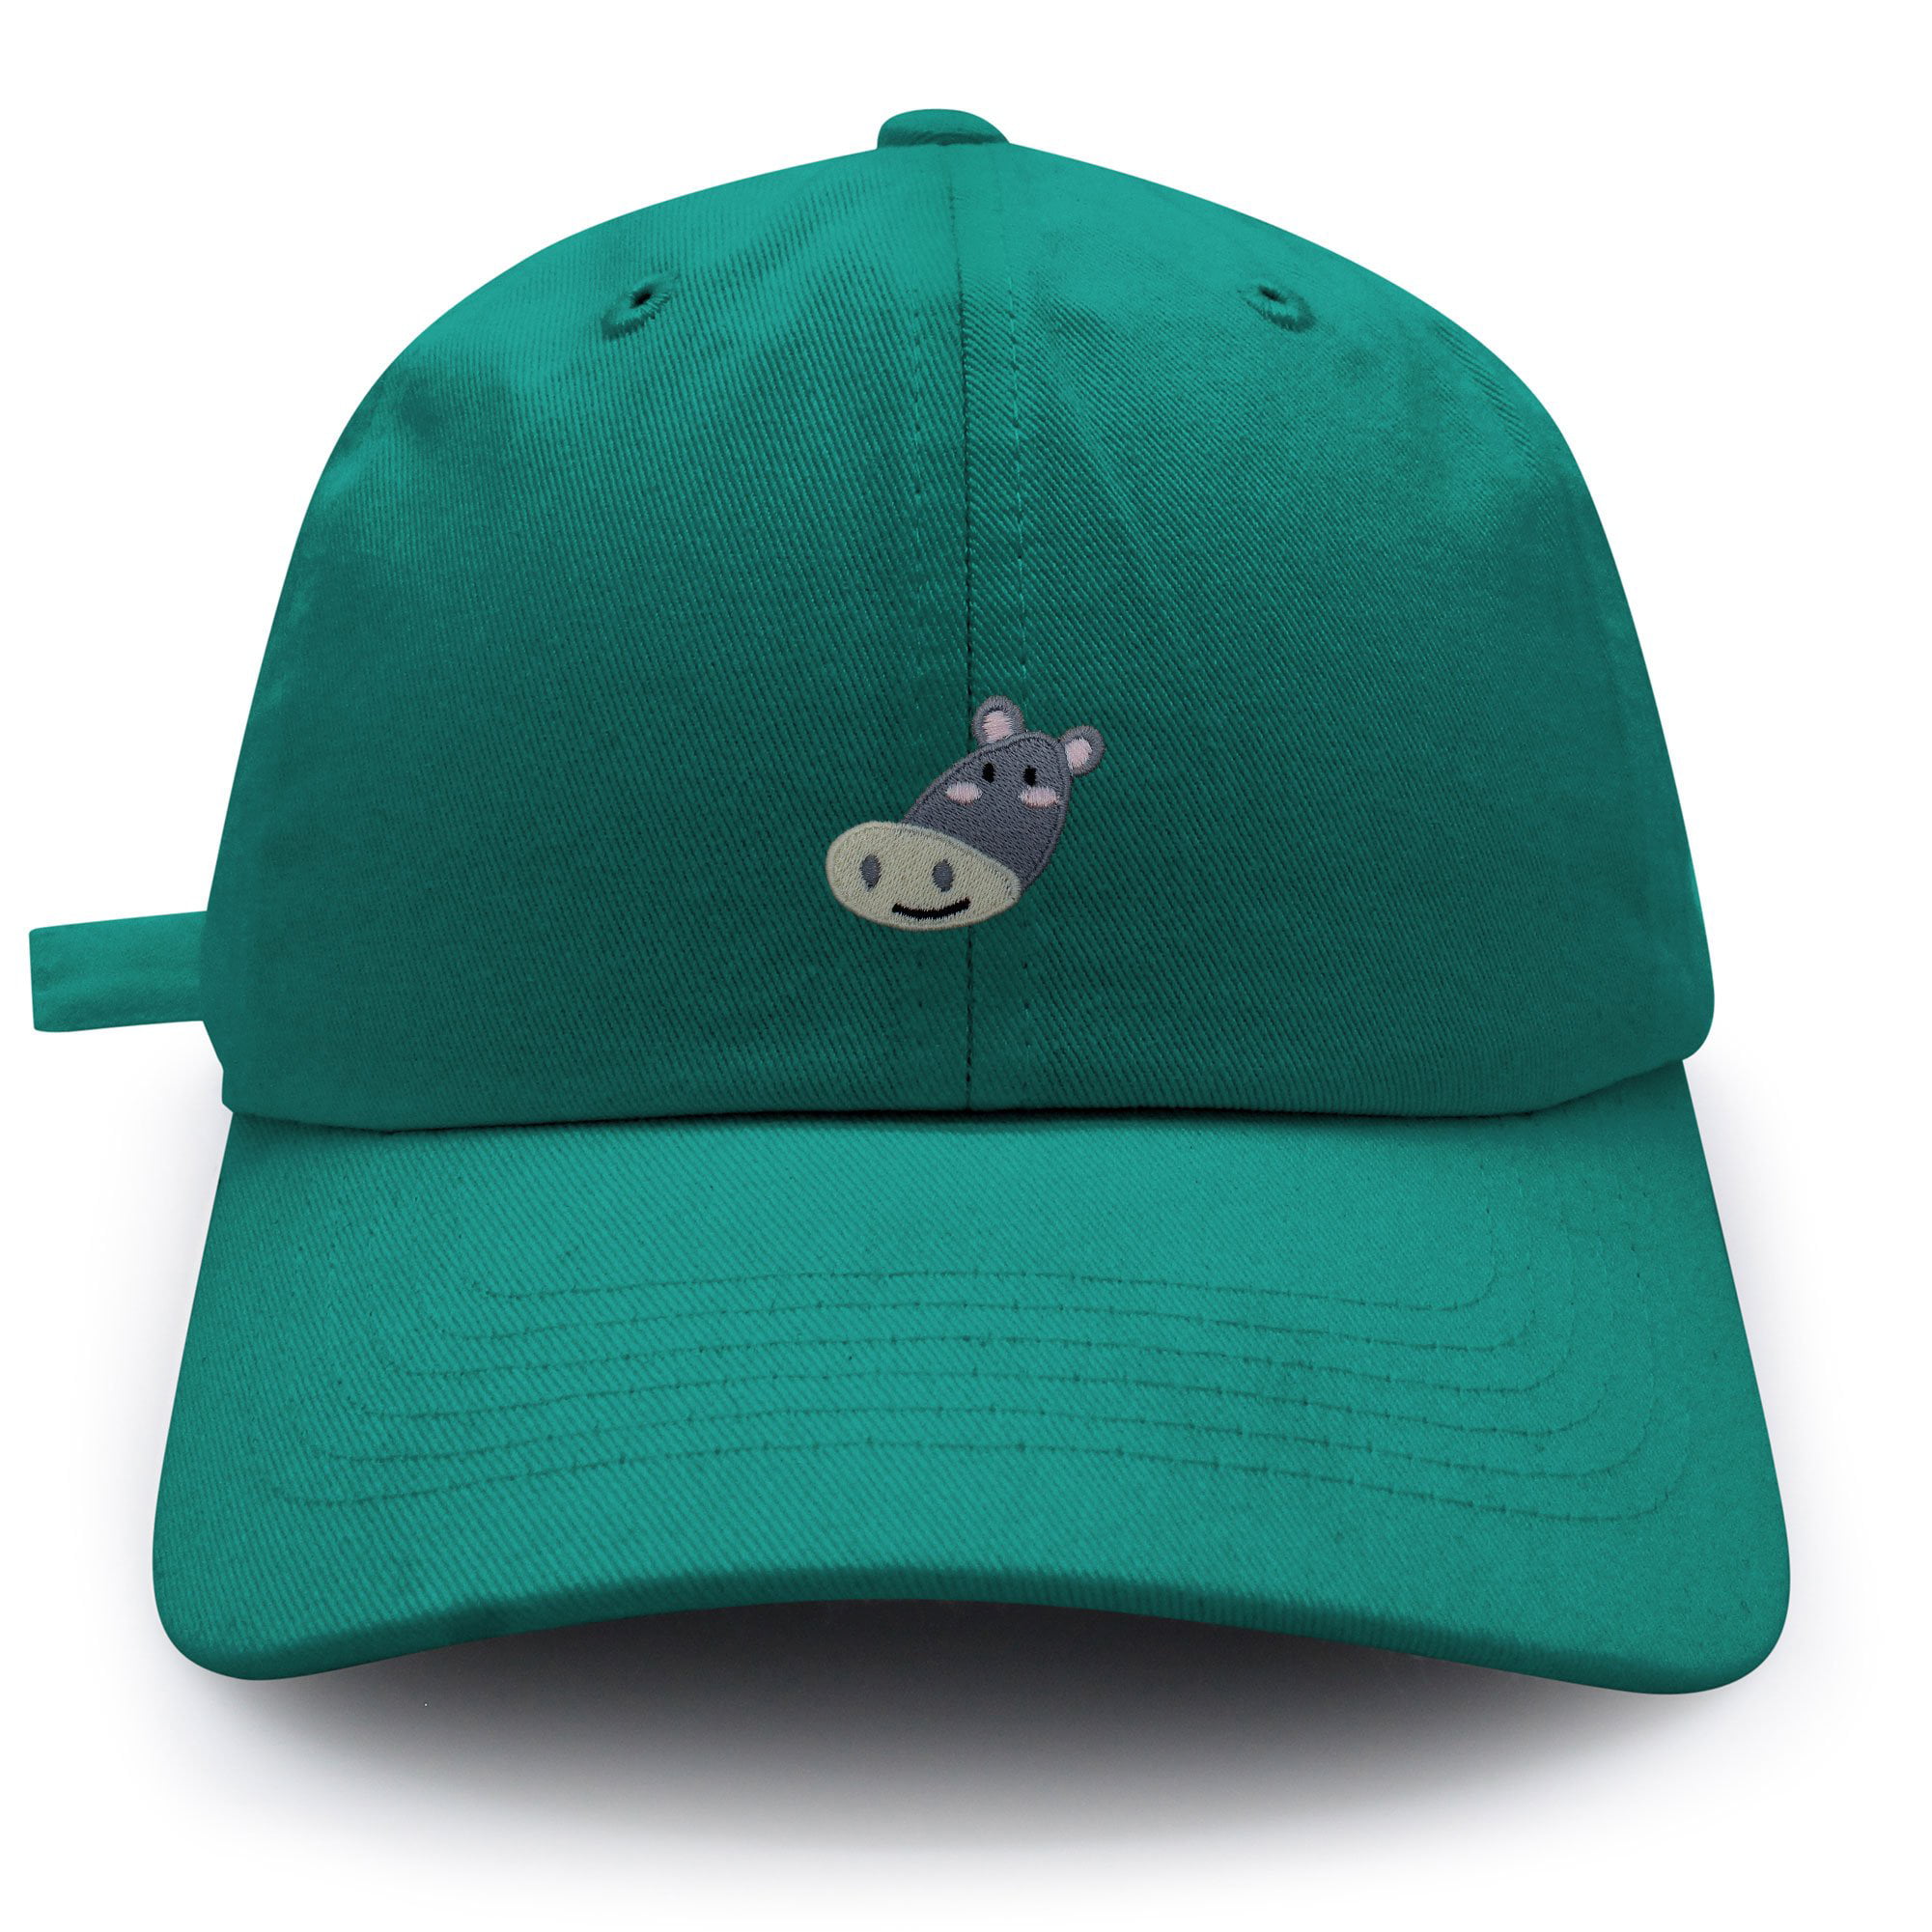 Baby Toddler Boy Summer 100%Cotton Beach Hat Cap Chin Straps "Hippo" Size 2-6m 